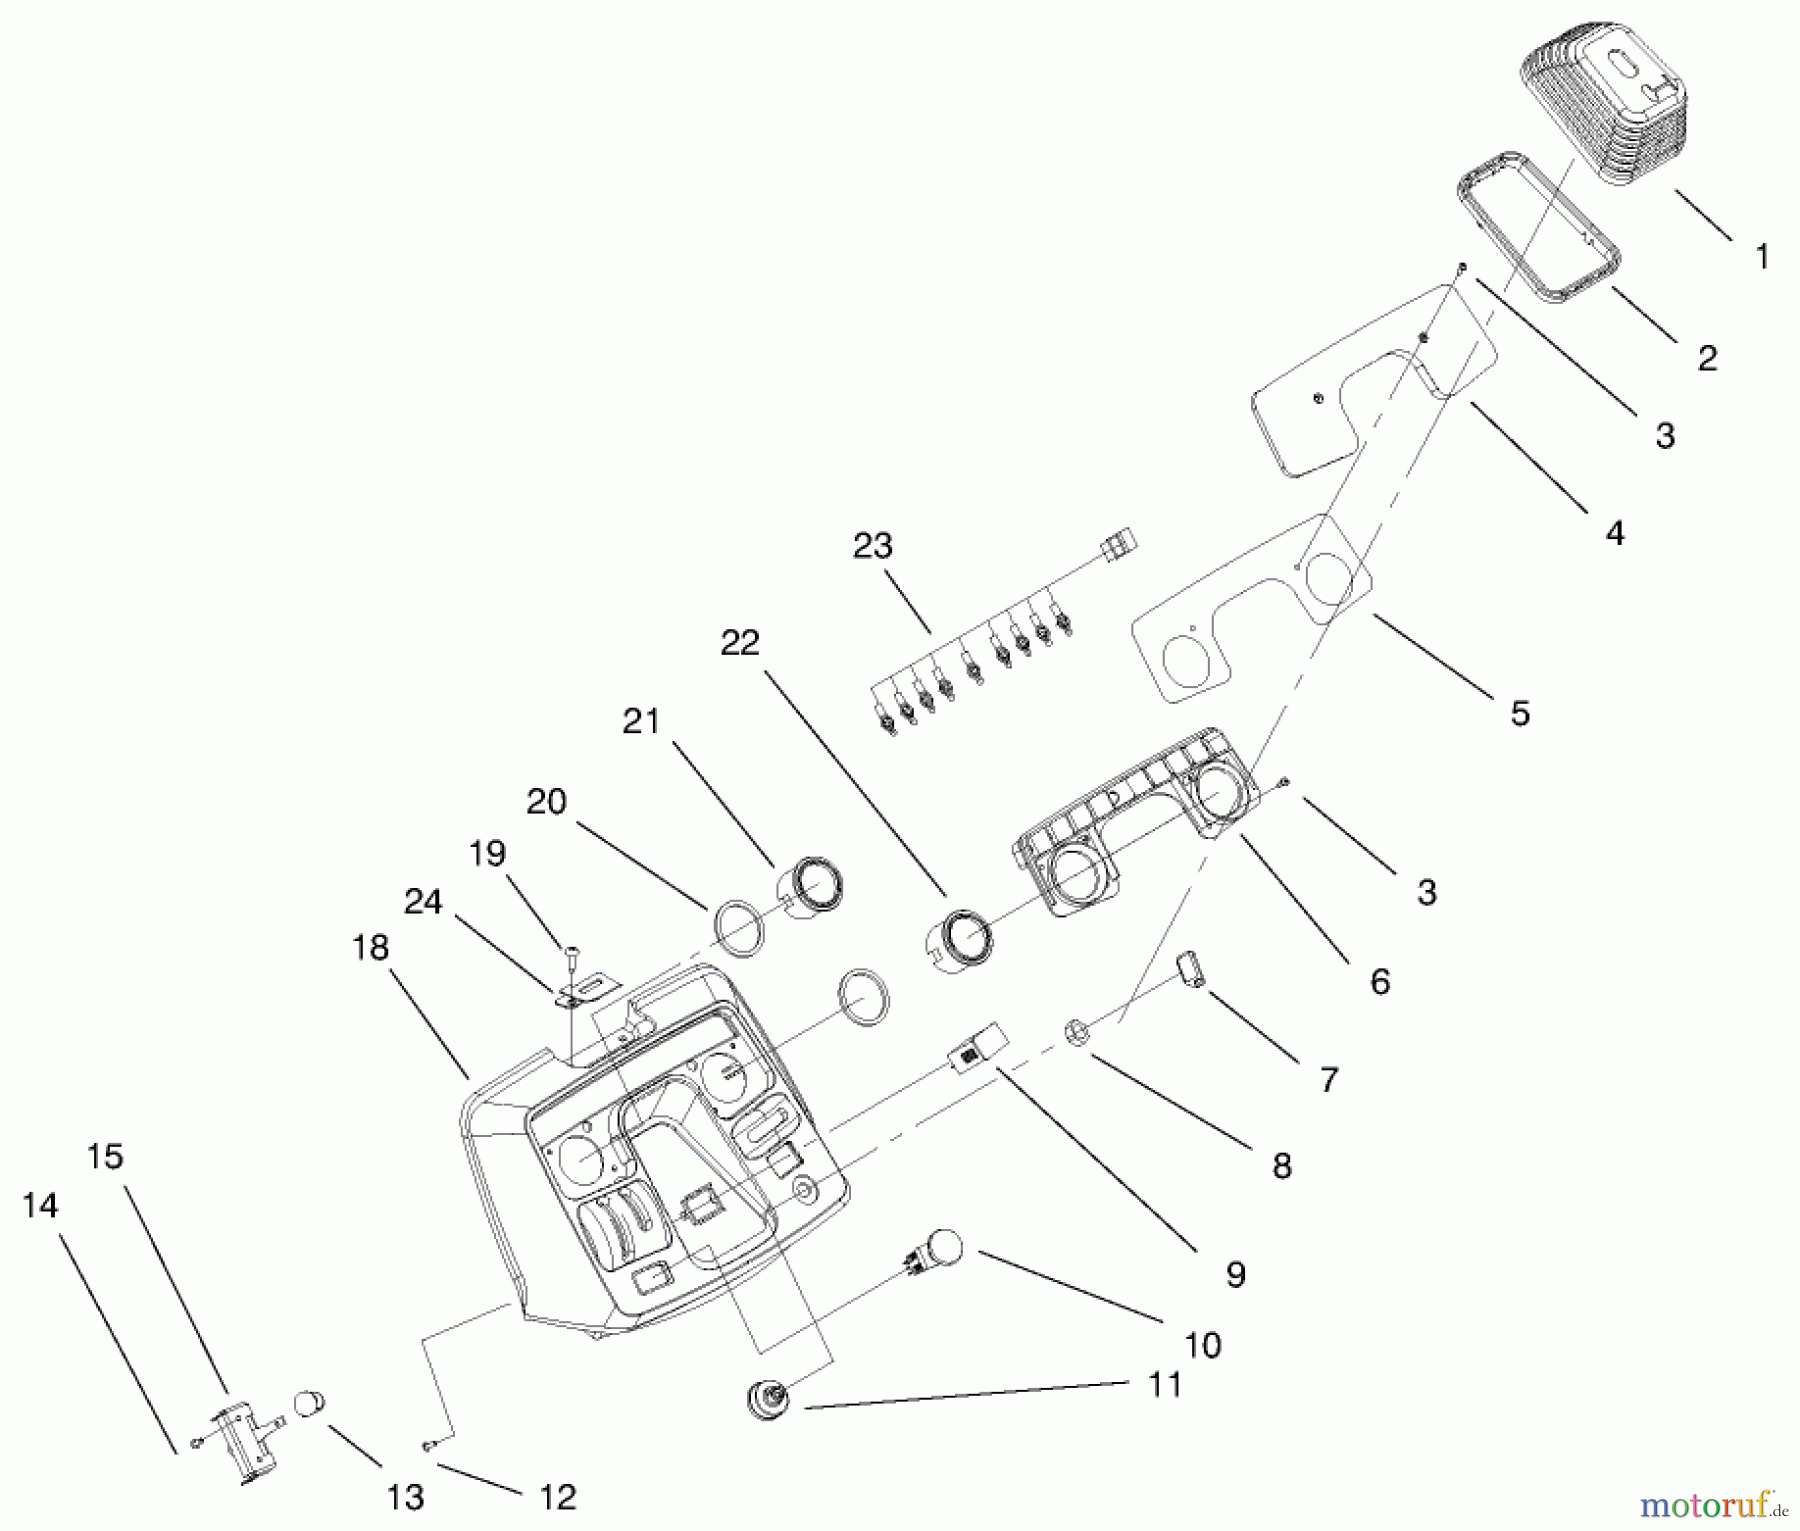  Toro Neu Mowers, Lawn & Garden Tractor Seite 1 73552 (523Dxi) - Toro 523Dxi Garden Tractor, 1999 (9900001-9999999) DASH ASSEMBLY